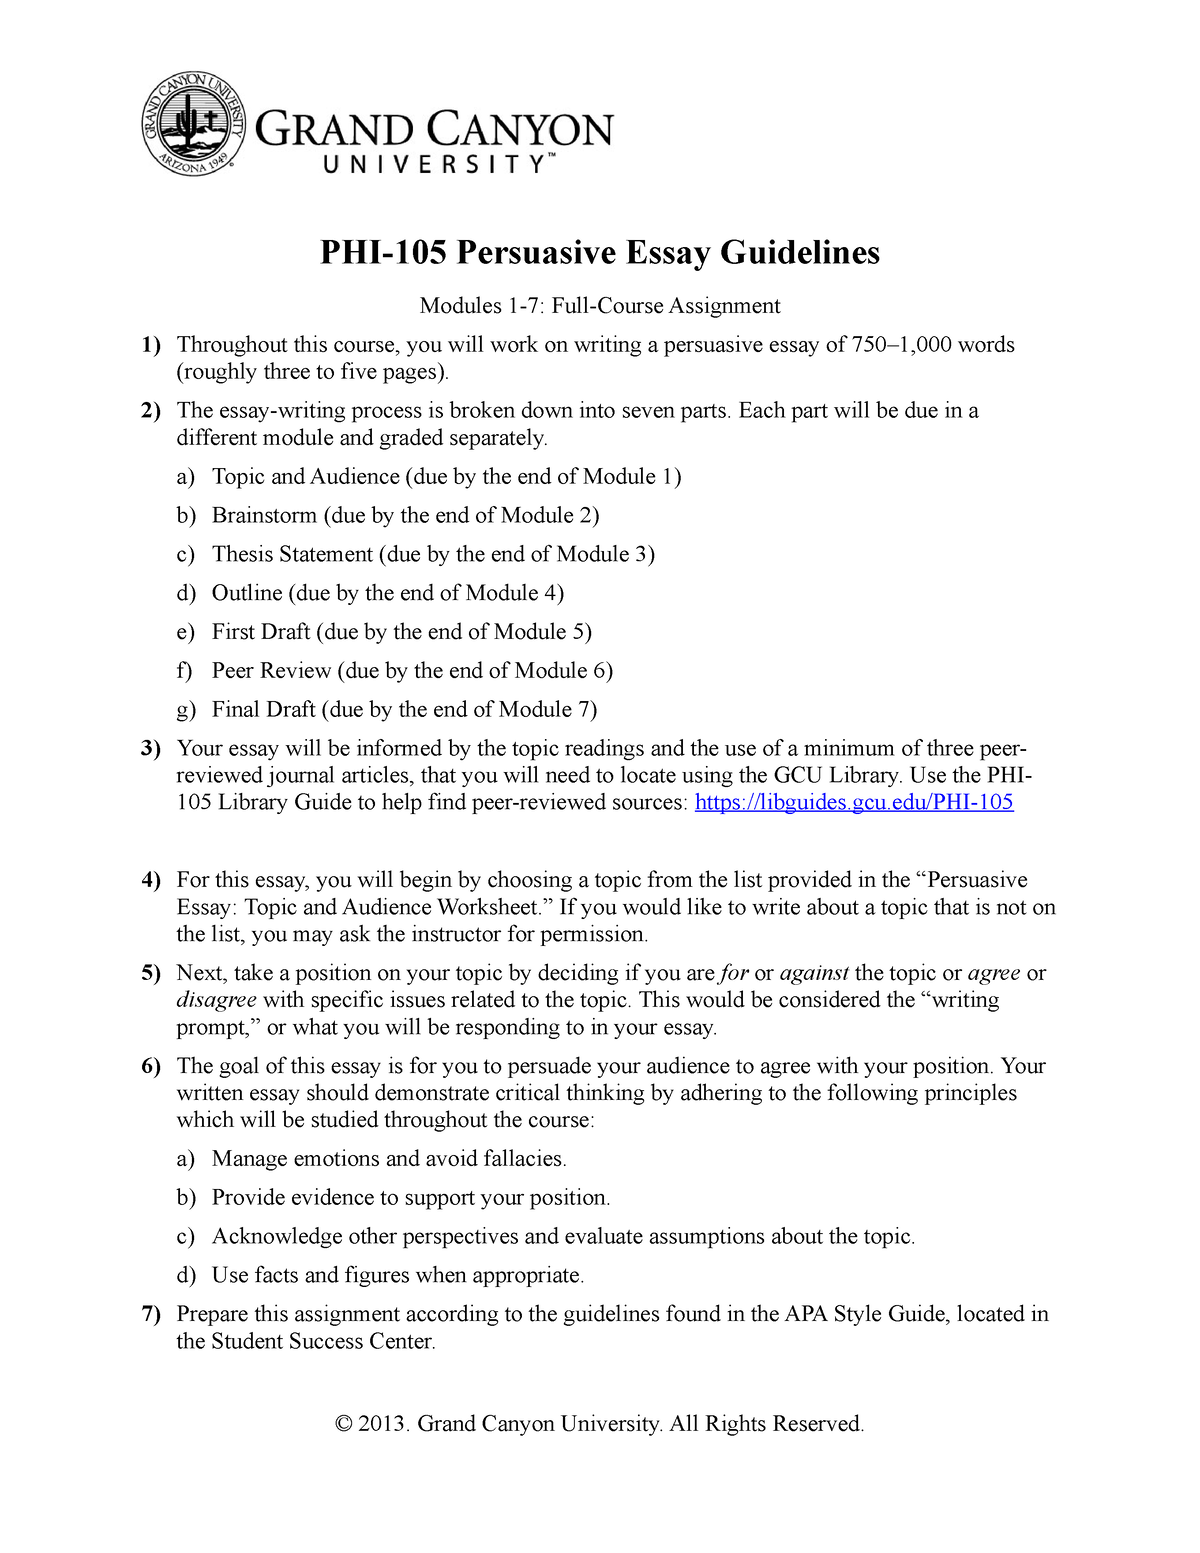 phi 105 persuasive essay final draft